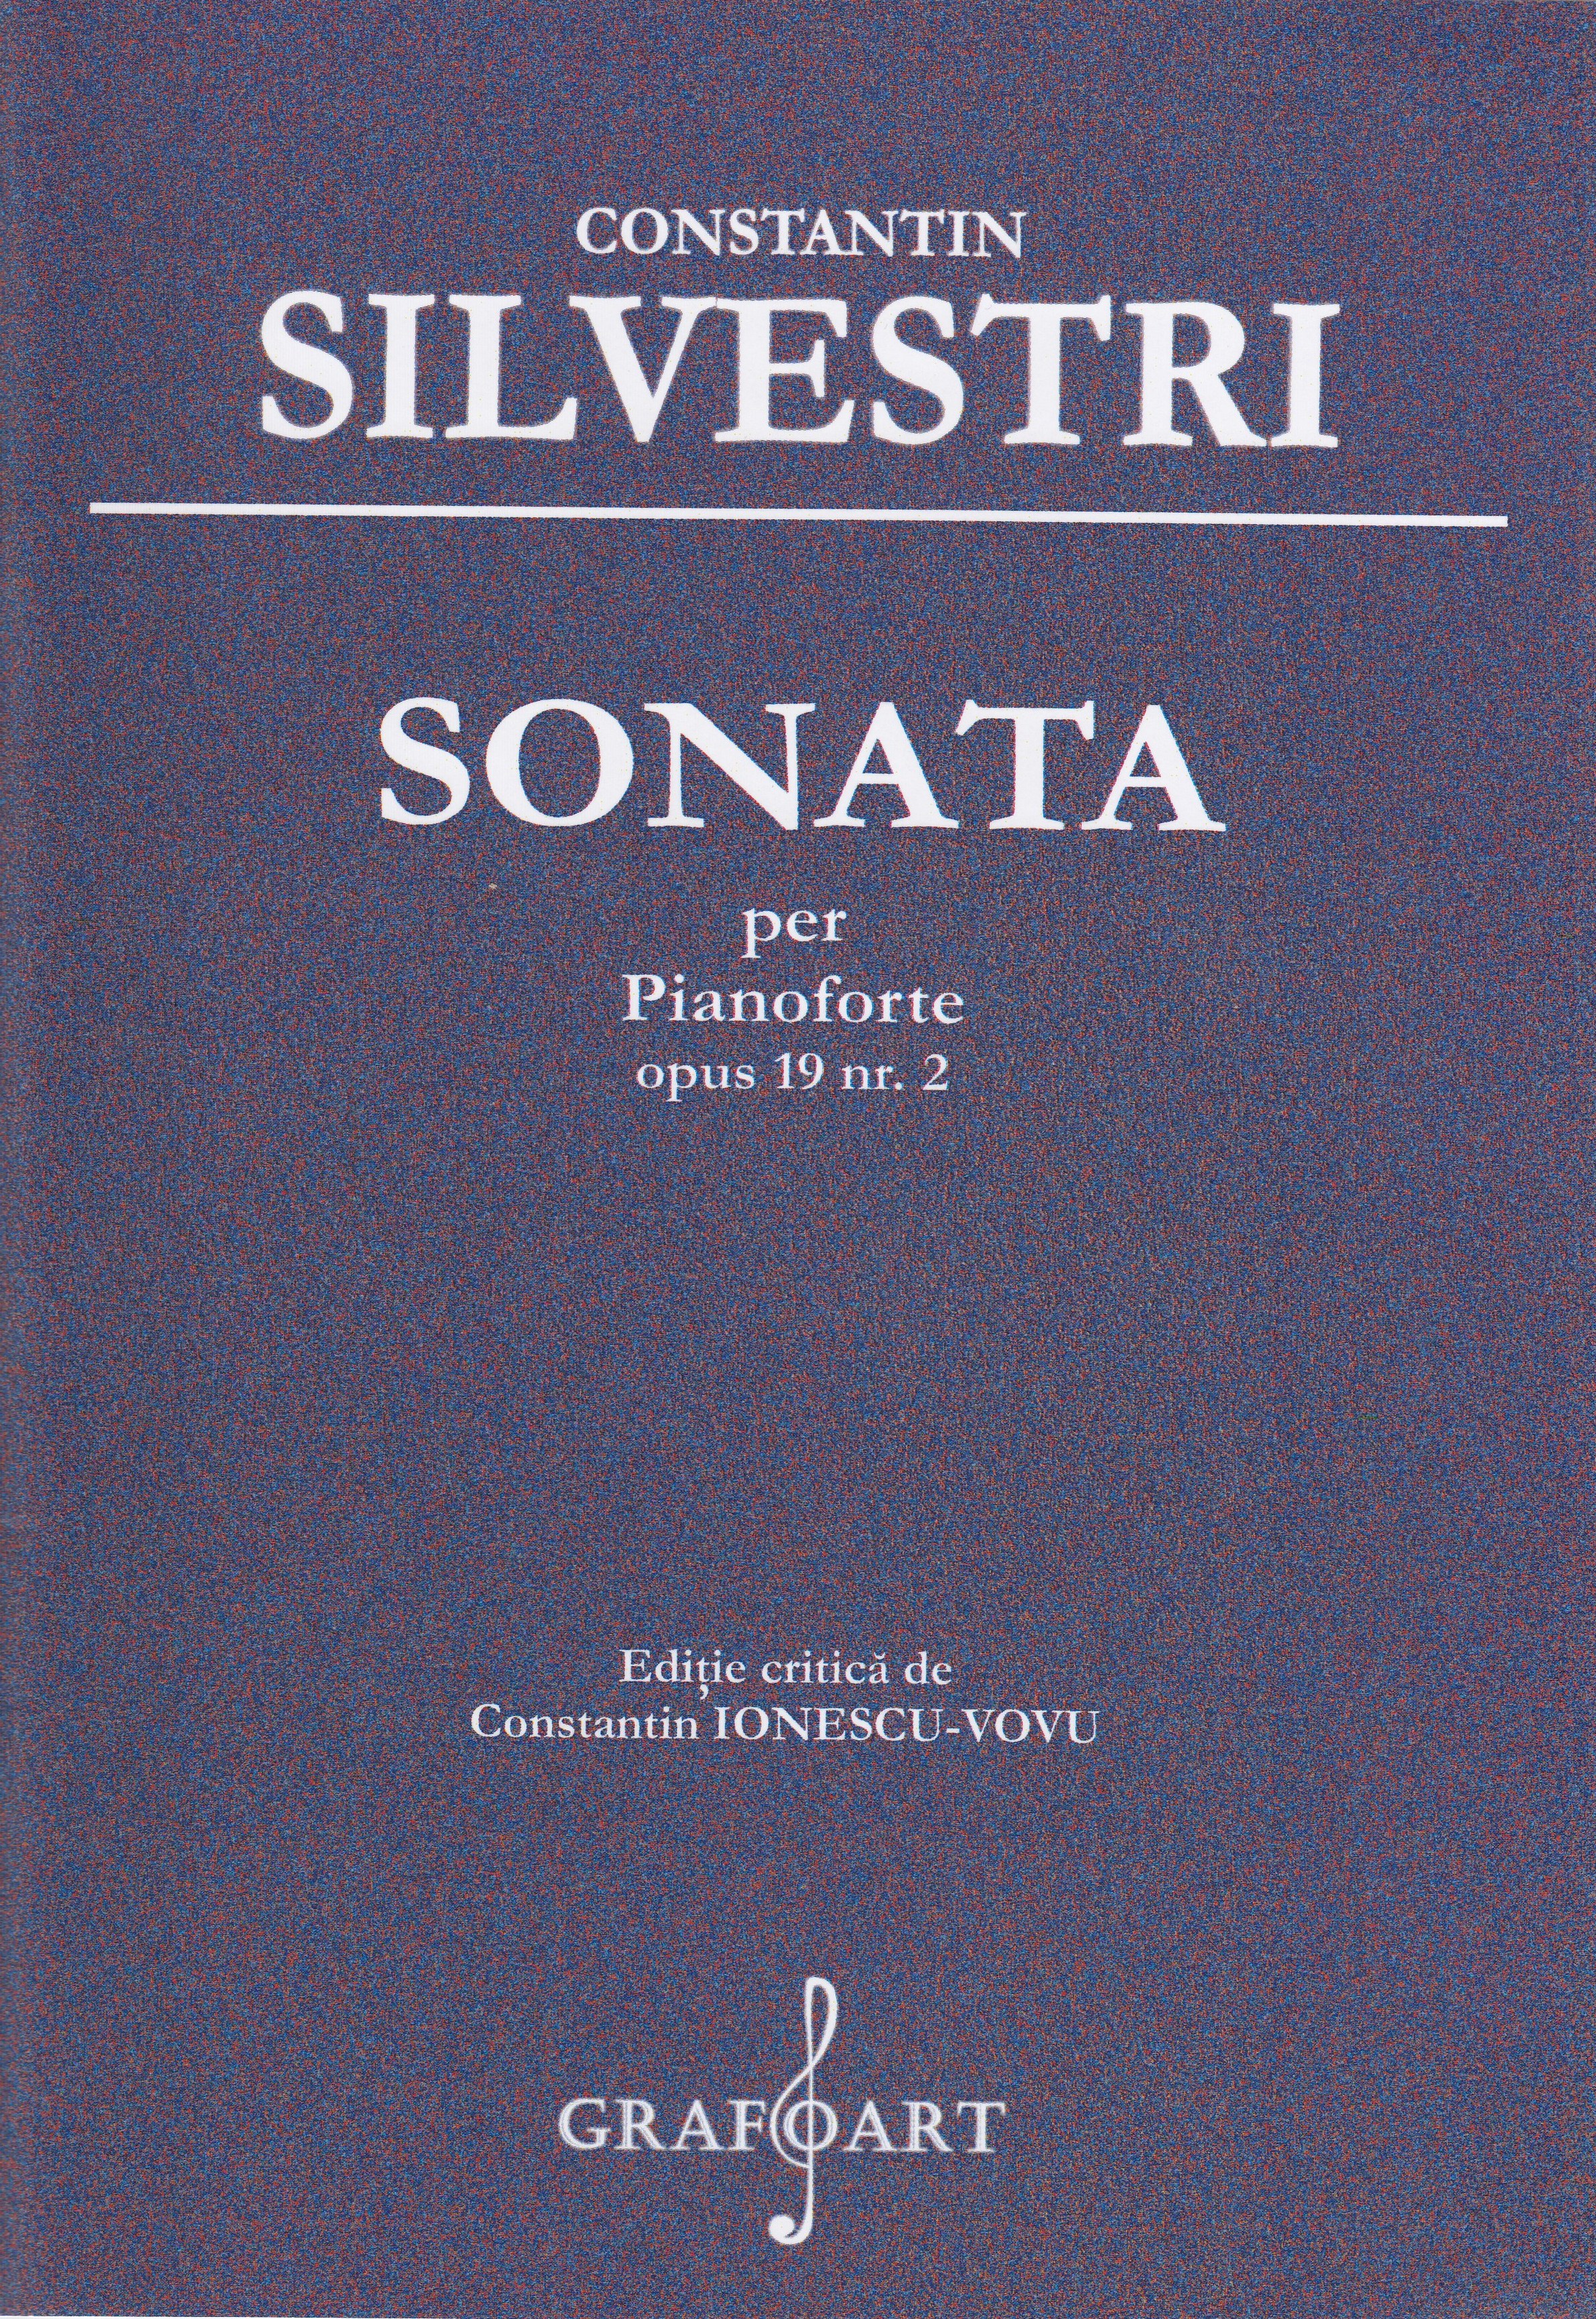 Sonata per Pianoforte opus 19 nr.2 - Constantin Silvestri